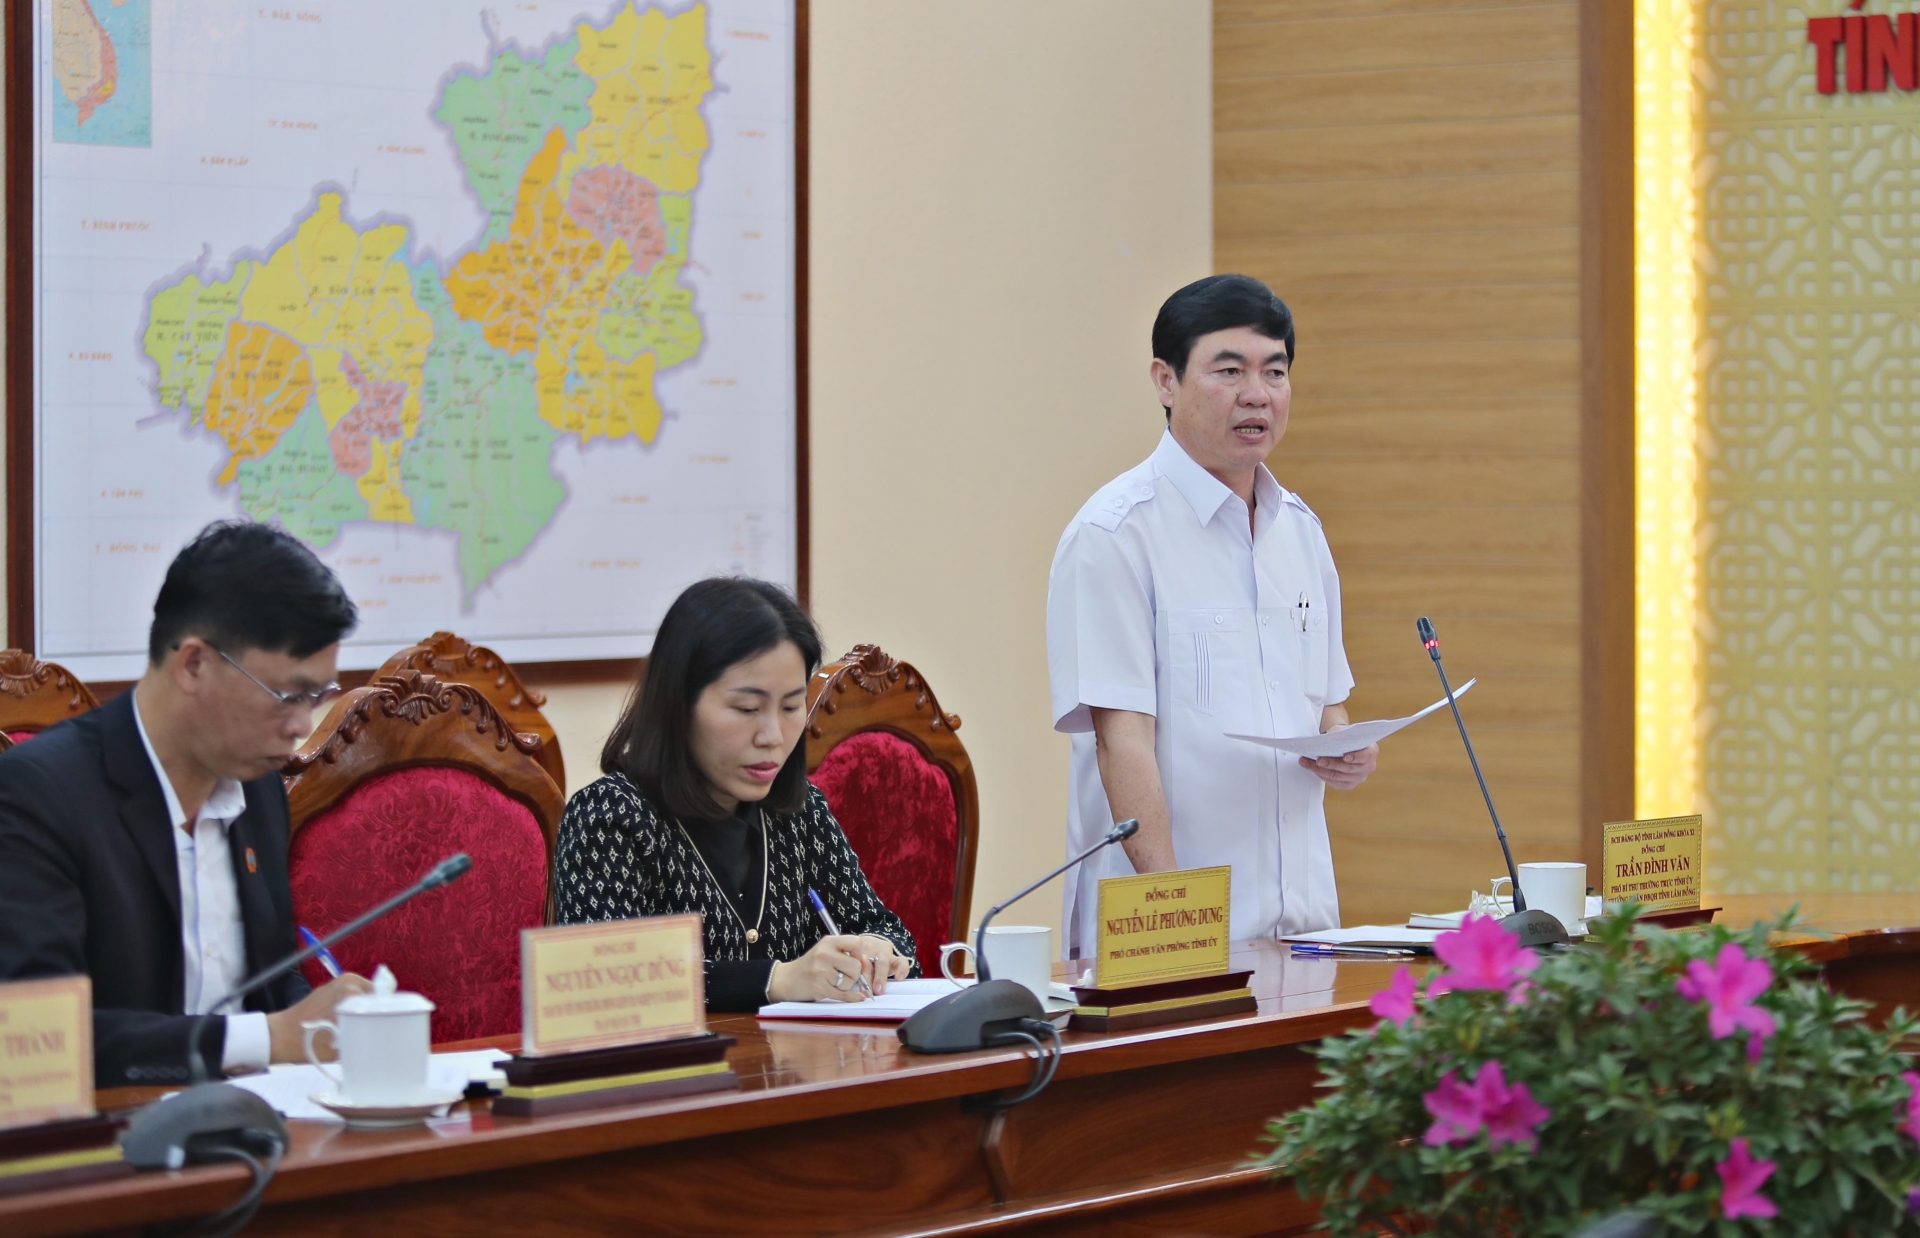 Đồng chí Trần Đình Văn, Phó bí thư Thường trực Tỉnh ủy quán triệt một số nội dung về cách thức làm việc của Tổ rà soát